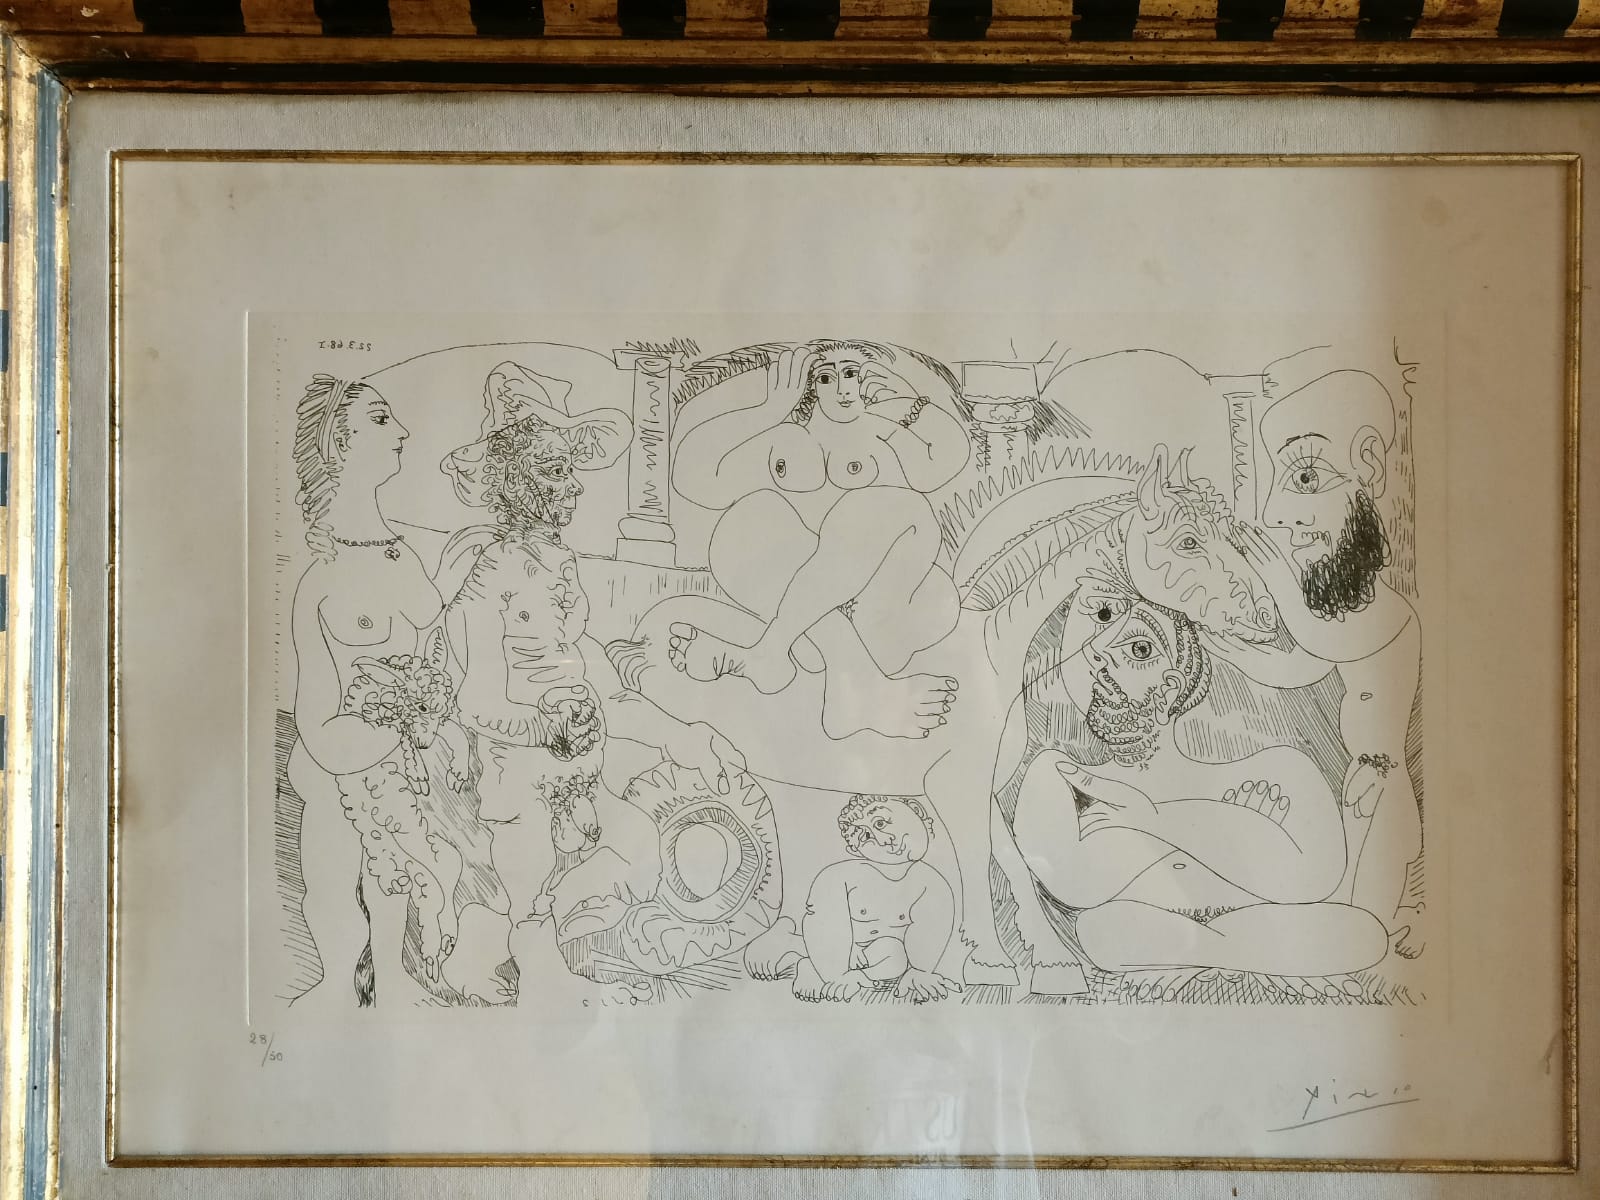 Arte, Piombino va ‘Oltre’: da Modigliani a Picasso, mostra al Castello 